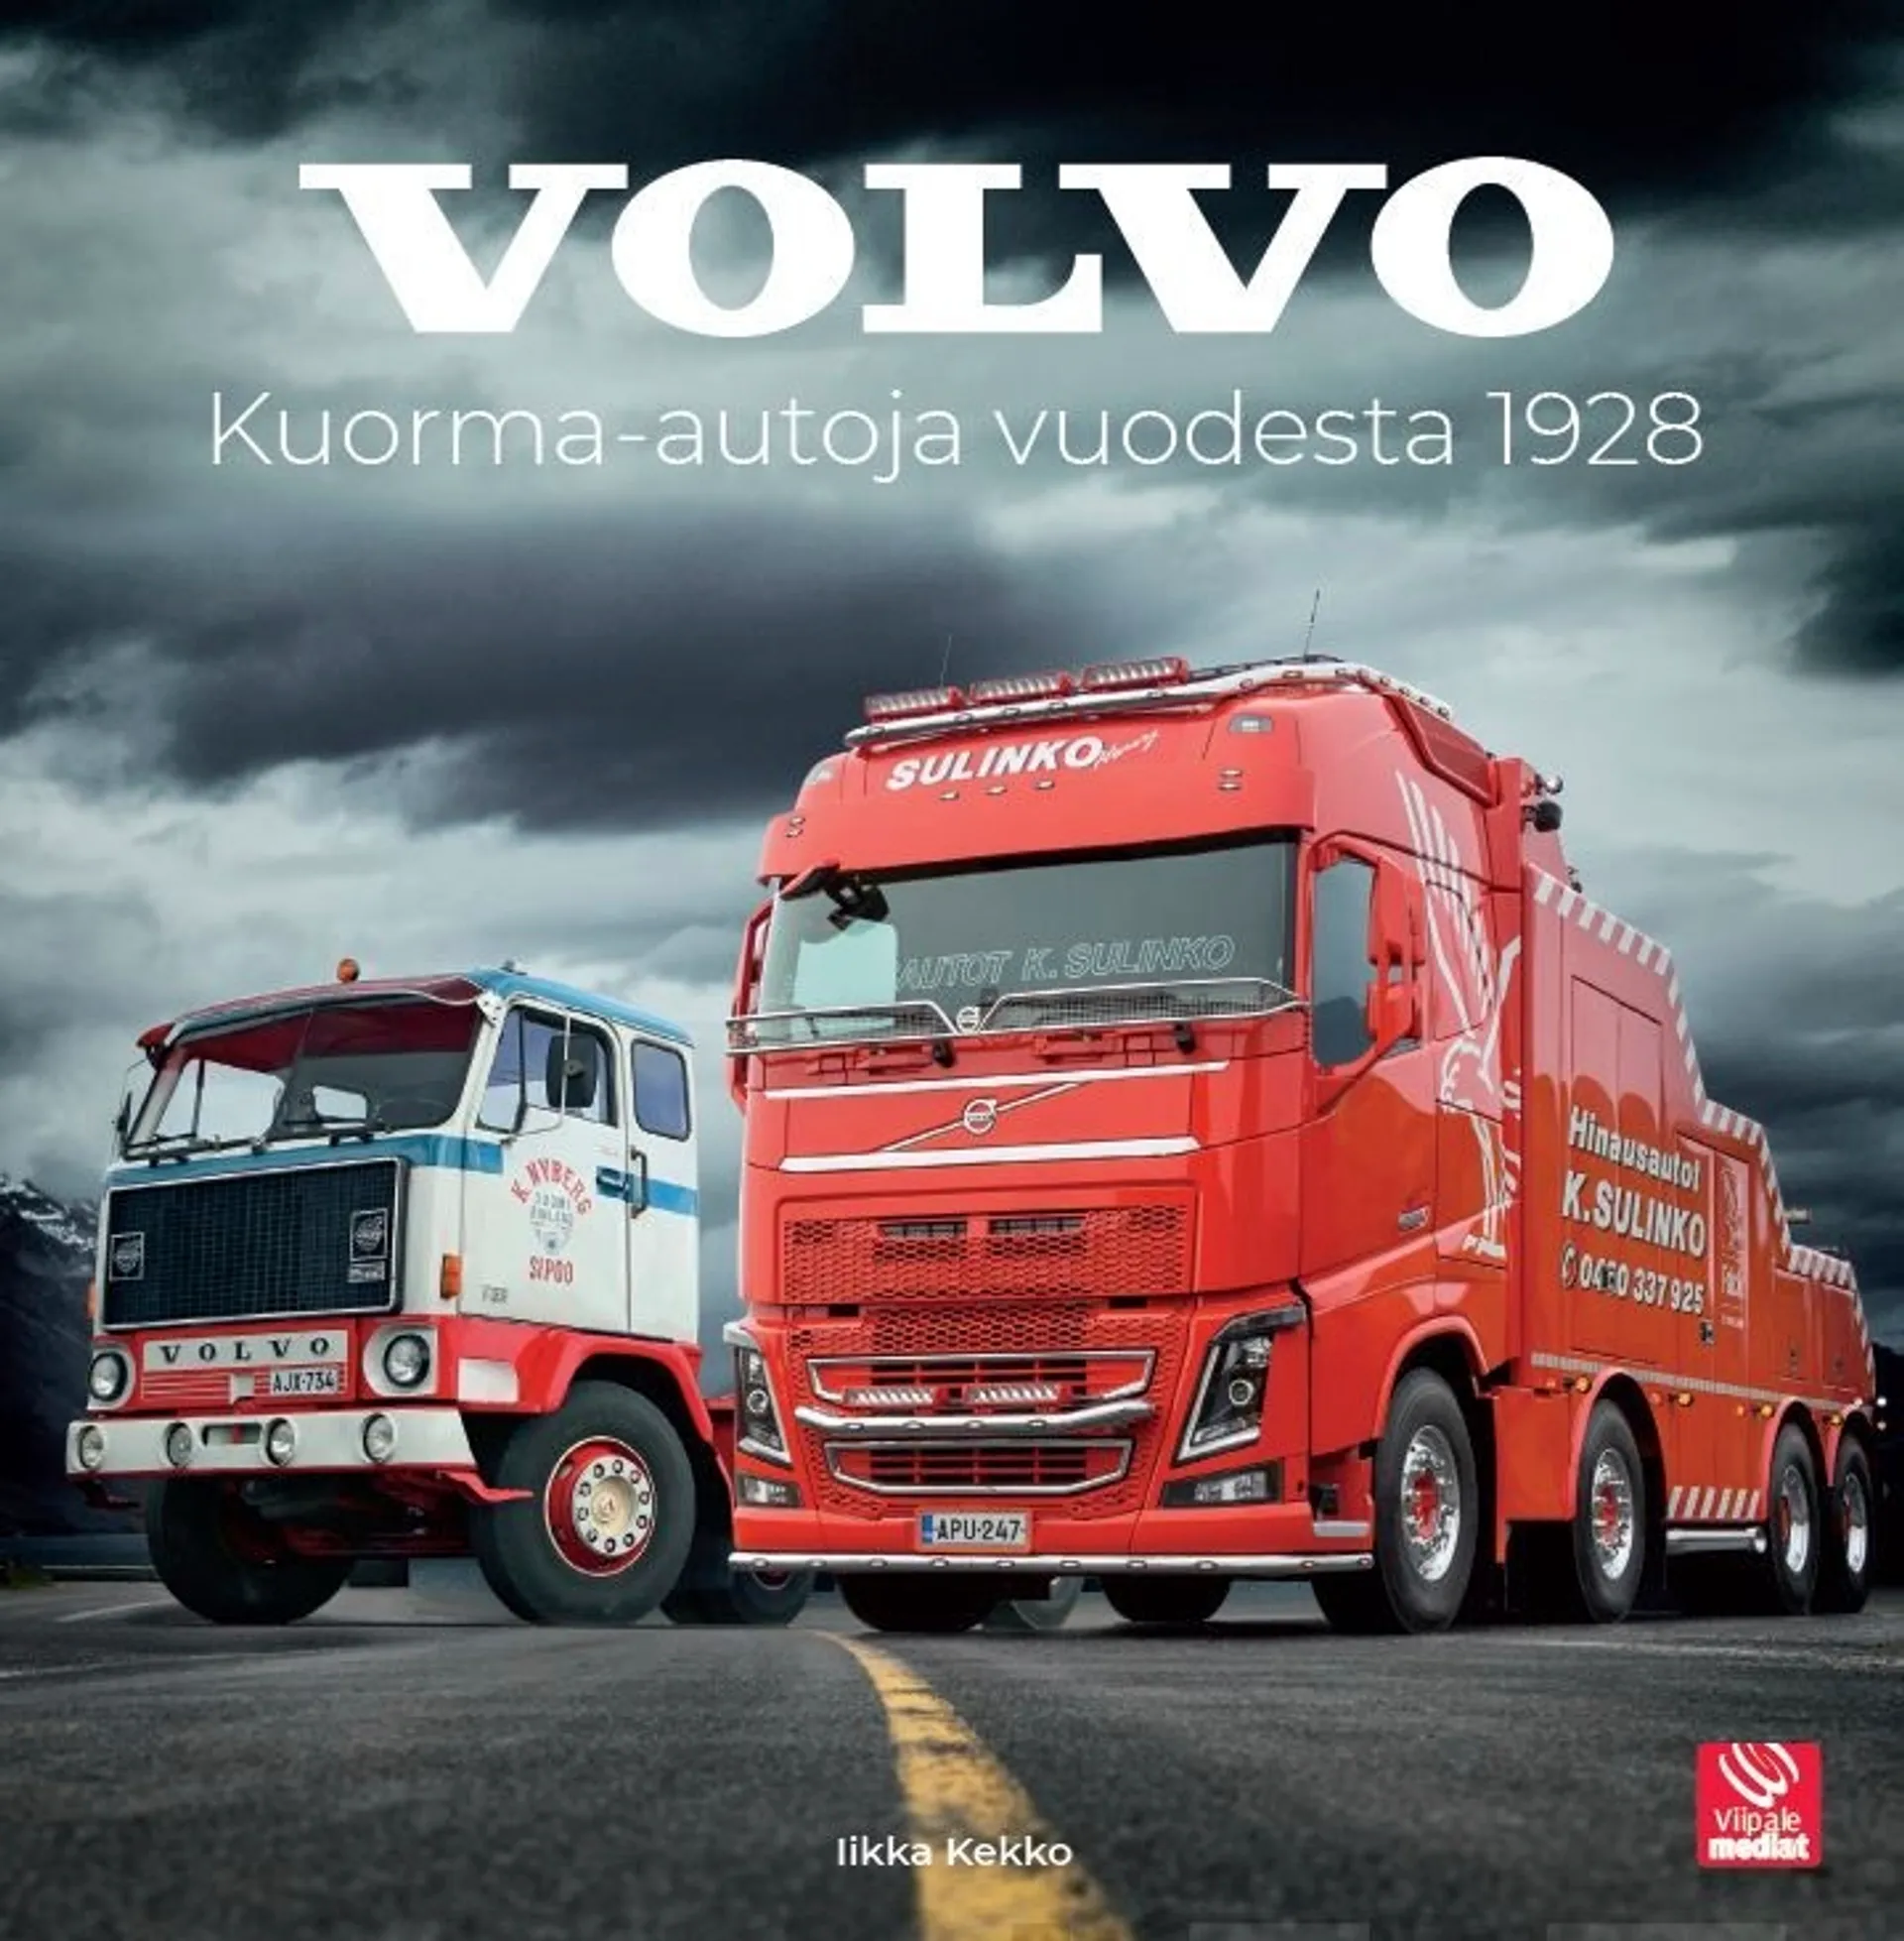 Kekko, Volvo